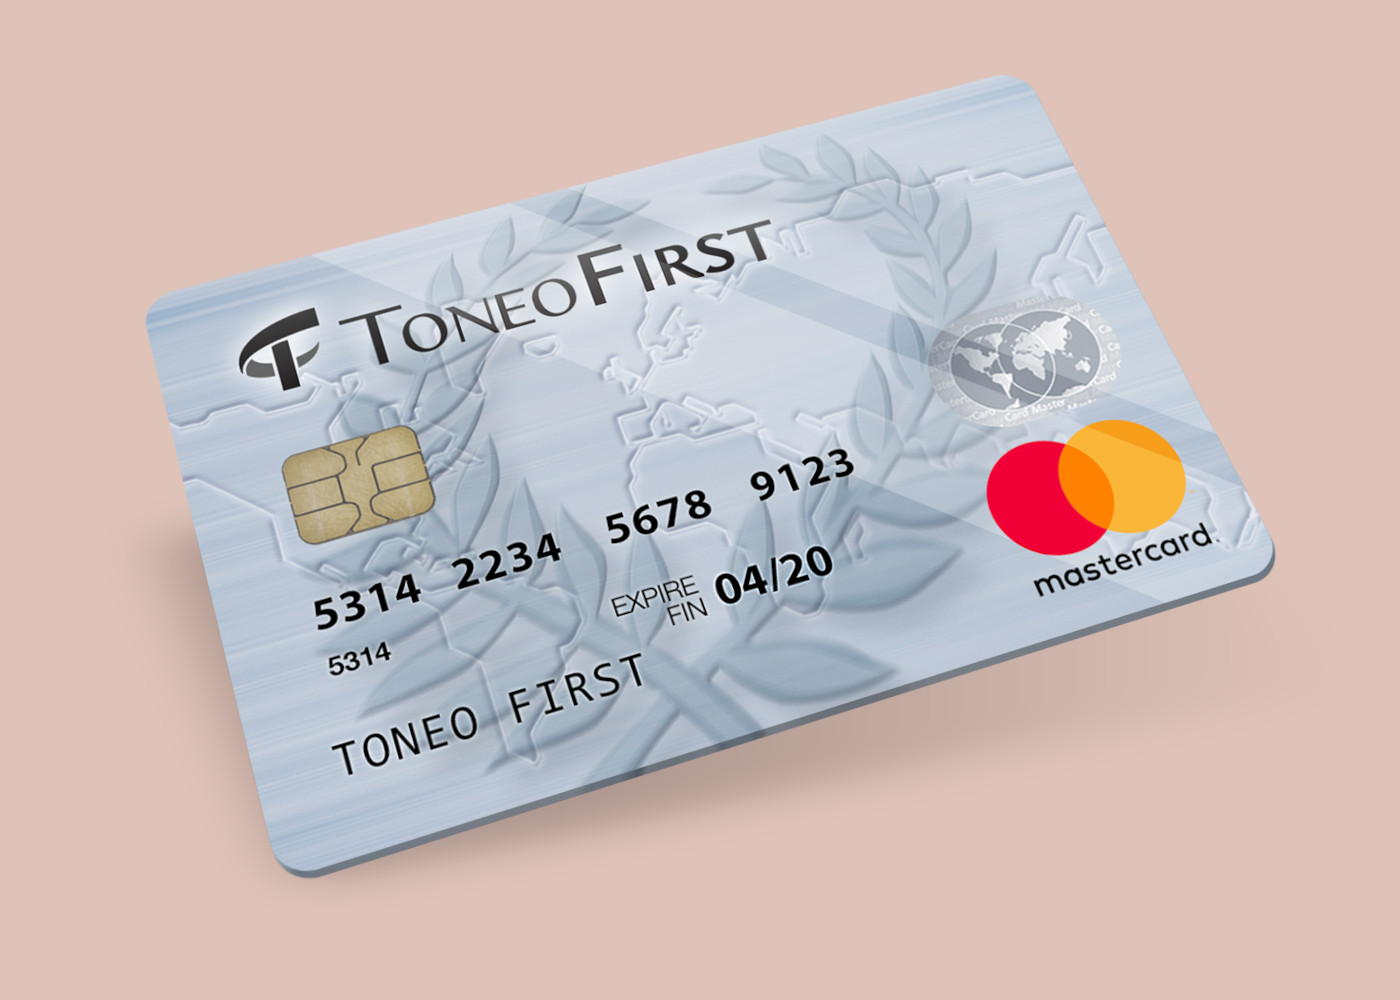 Toneo First Mastercard €15 Gift Card EU